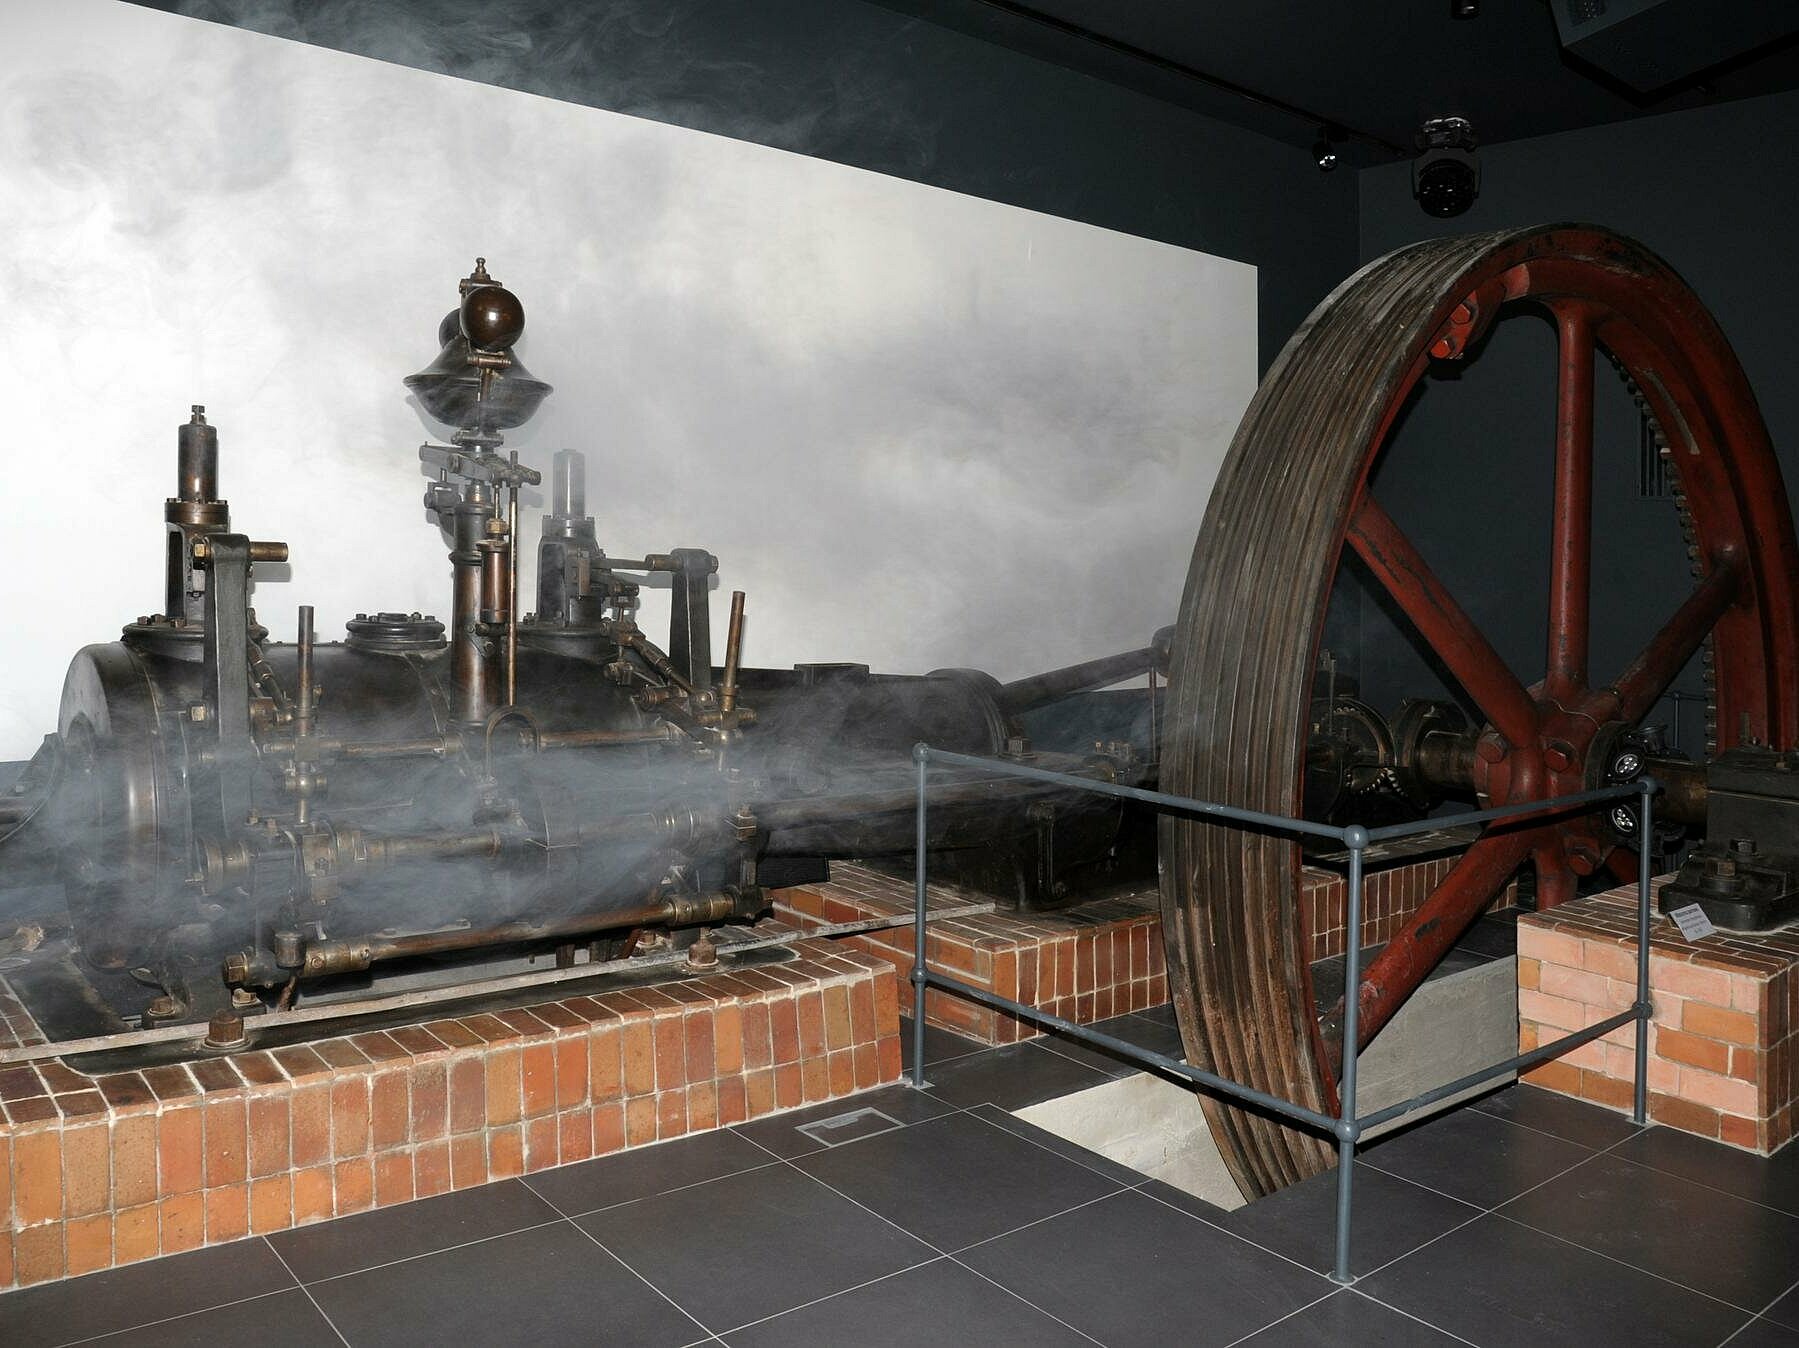 Maszyna parowa w budynku kotłowni , centralne muzeum wlokiennictwa